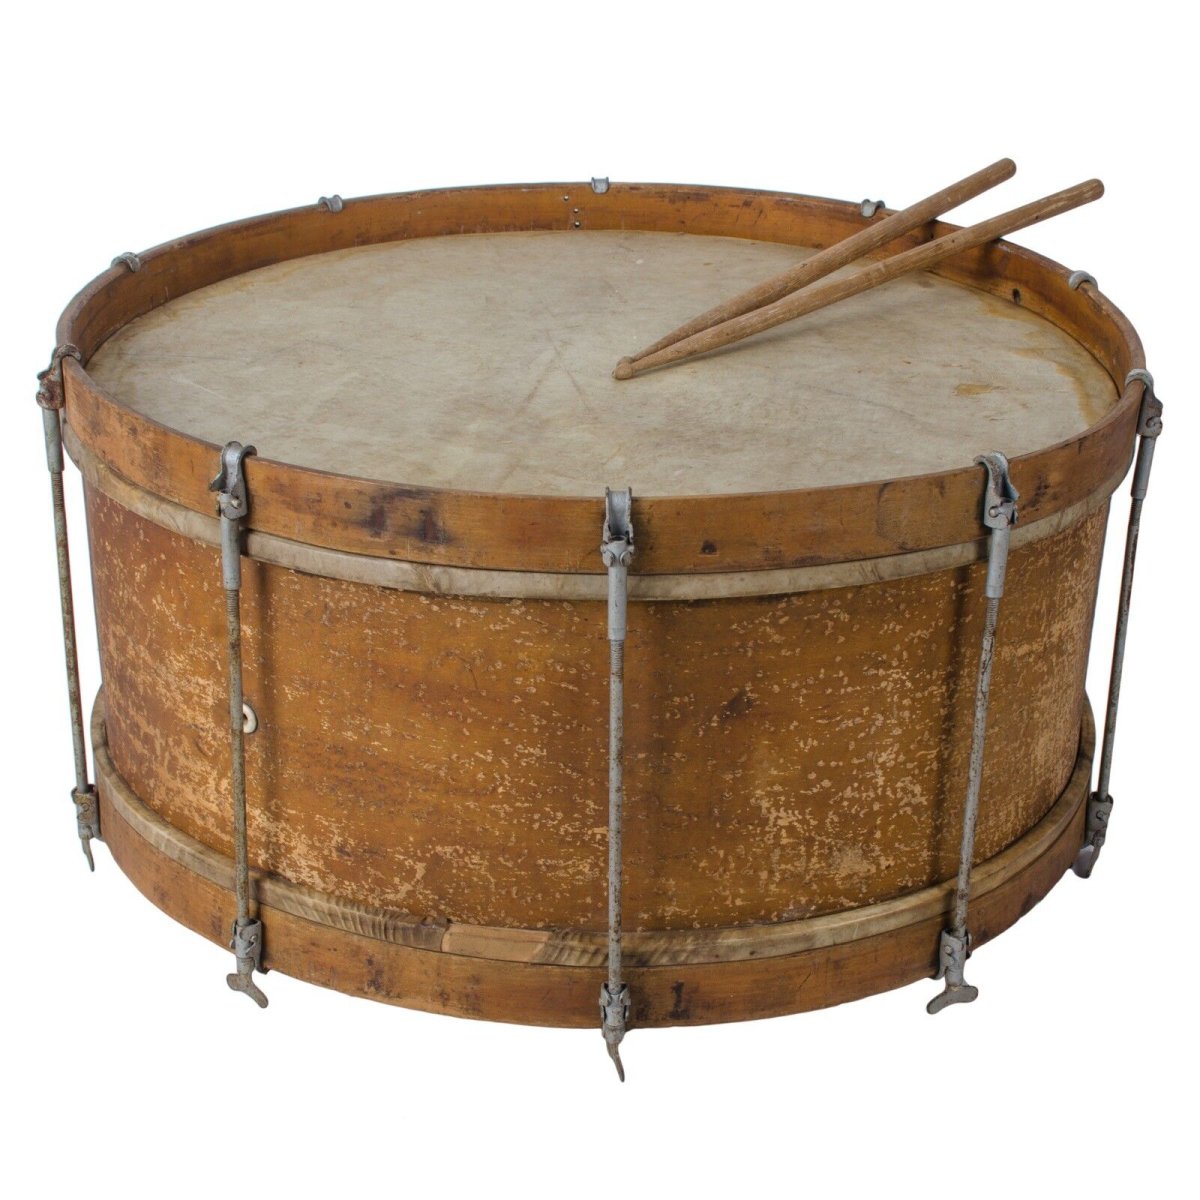 Большой барабан музыкальный инструмент